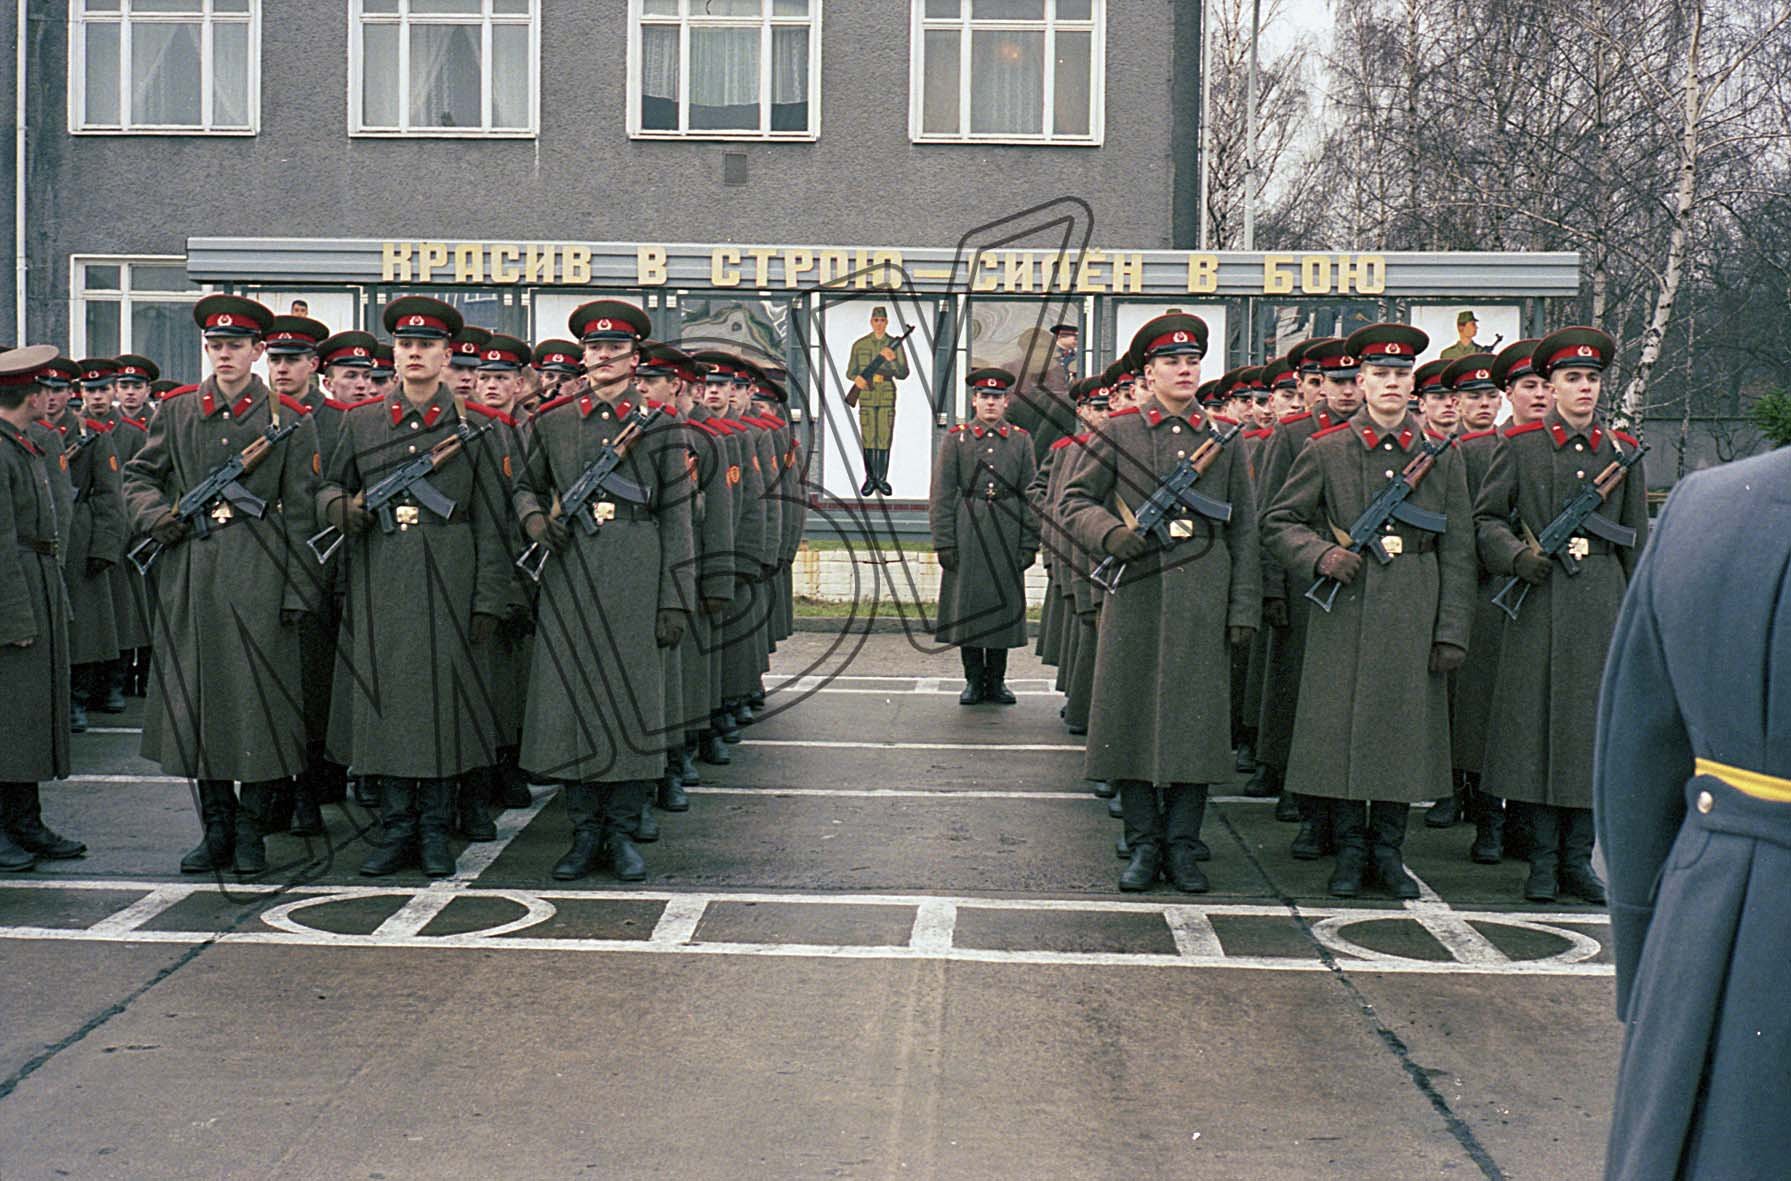 Soldaten der Berlin-Brigade vor der Vereidigung, Berlin-Karlshorst, Dezember 1993 (Museum Berlin-Karlshorst RR-P)